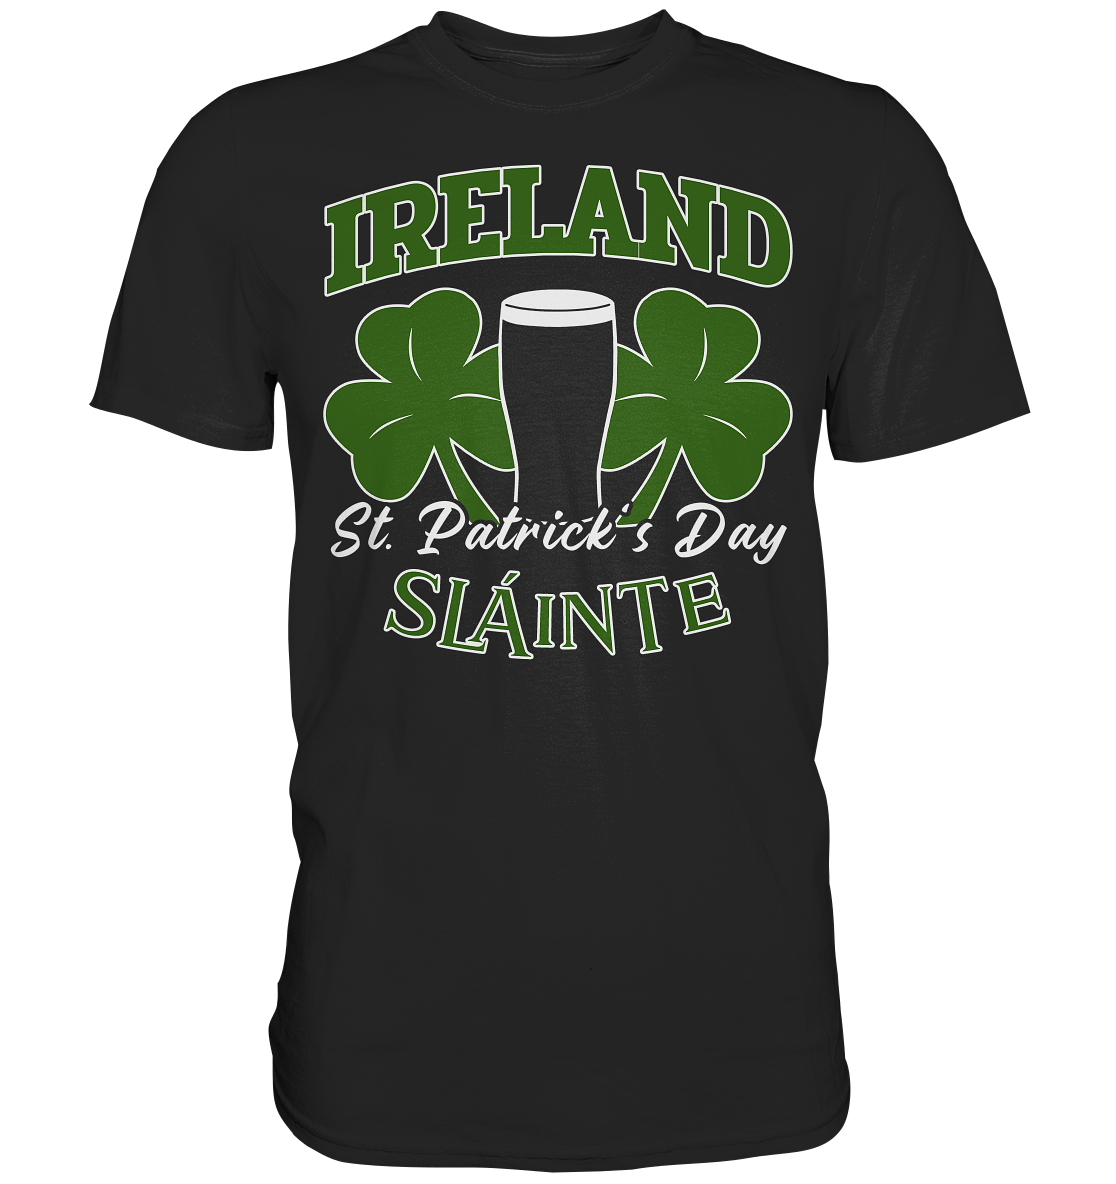 Ireland "St. Patrick's Day" - Premium Shirt